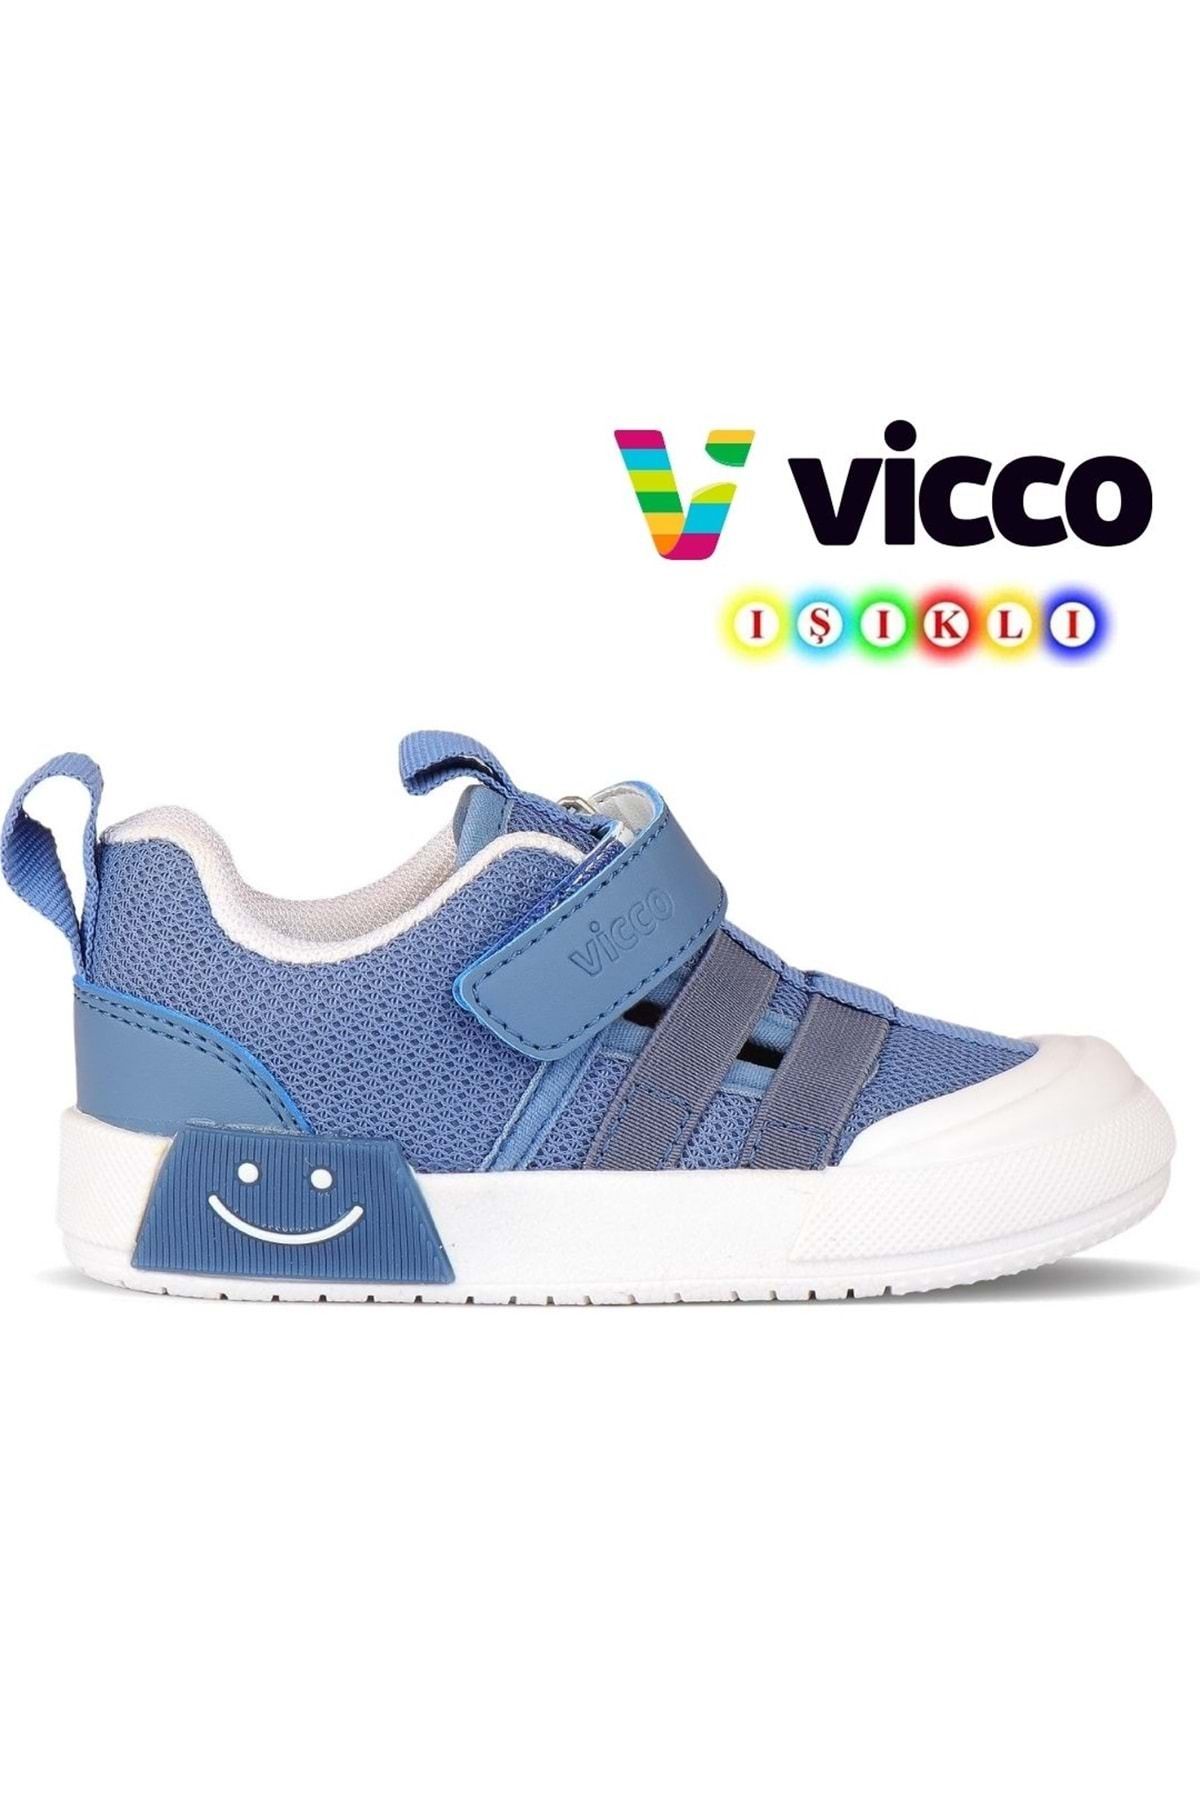 Vicco Momo Işıklı Ortopedik Çocuk Spor Ayakkabı Kot